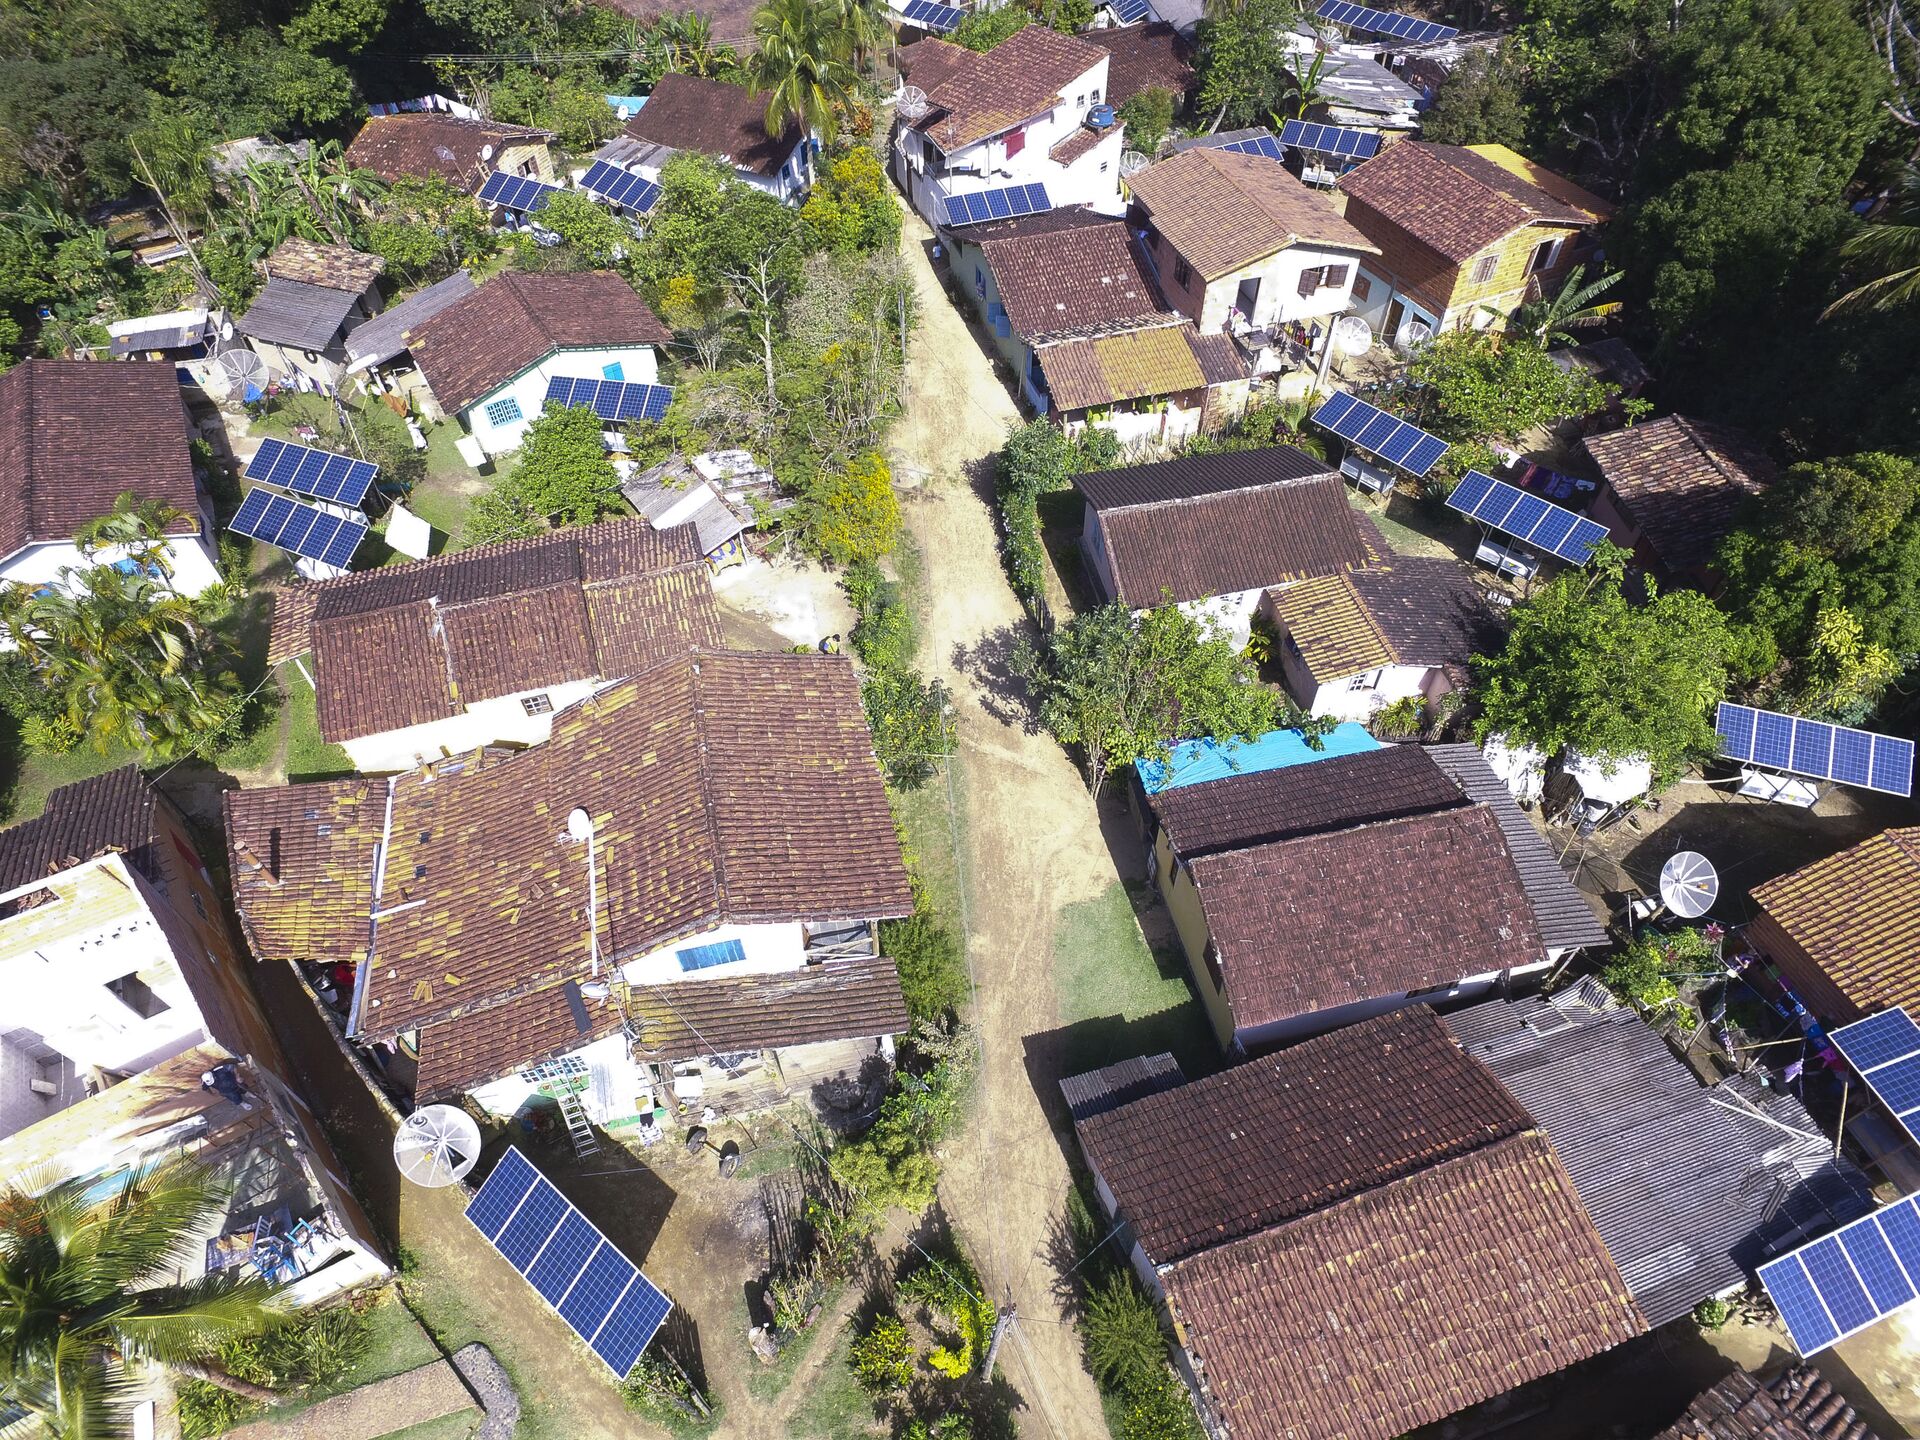 Imagem aérea da comunidade Bonete, vila isolada em Ilhabela (SP). Após anos de dificuldade com energia elétrica, os cerca de 200 moradores, por meio de recurso público, instalam placas solares que abastecem baterias (foto de arquivo) - Sputnik Brasil, 1920, 09.11.2021